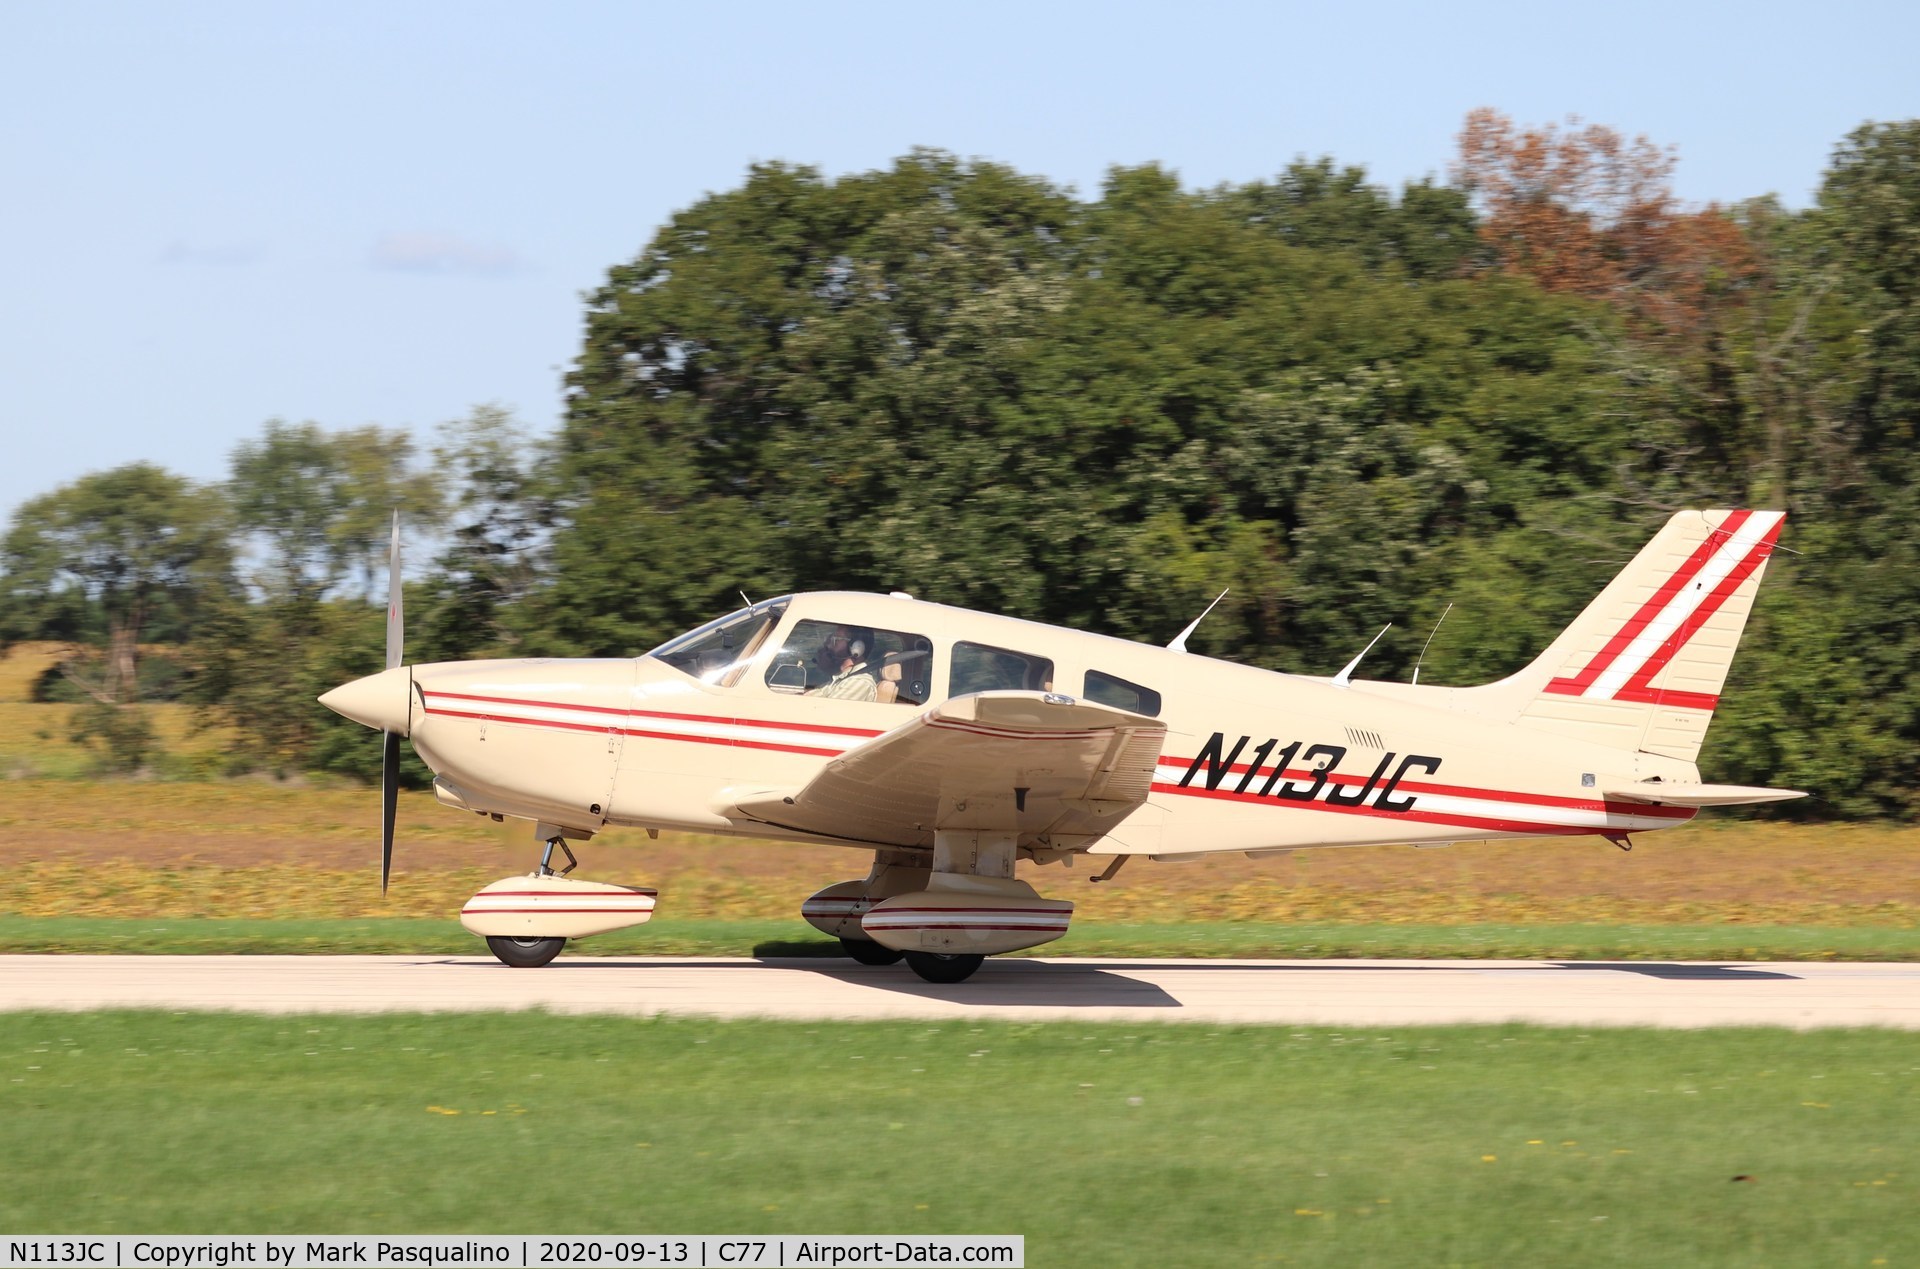 N113JC, 1982 Piper PA-28-236 Dakota C/N 28-8211027, Piper PA-28-236